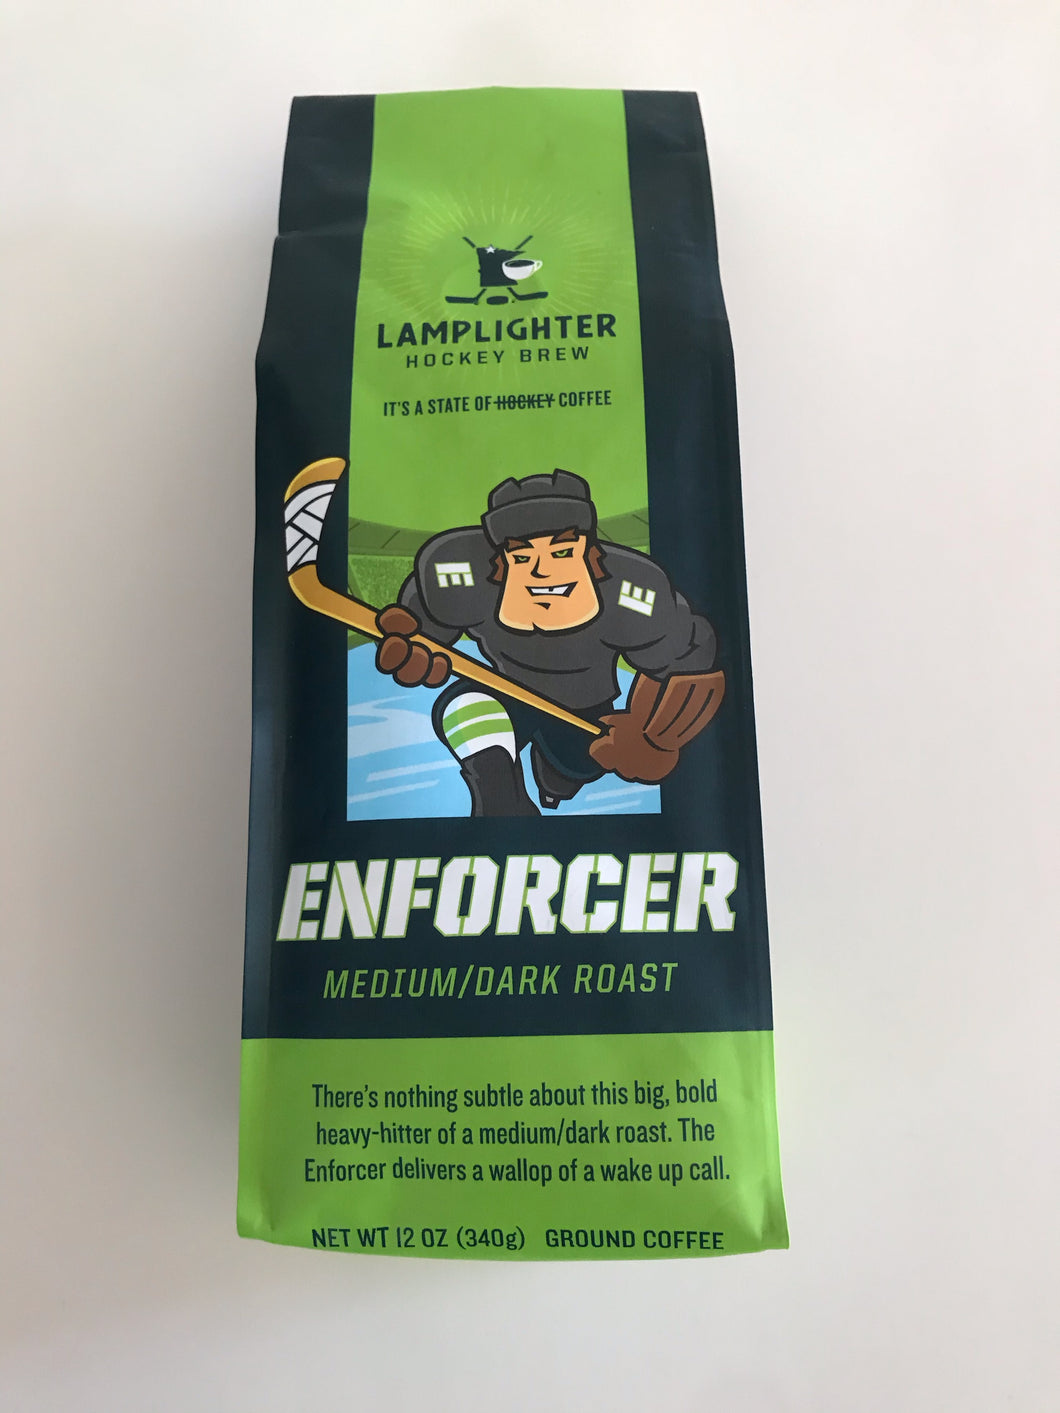 Lamplighter Hockey Brew:  The Enforcer       Medium/Dark Roast